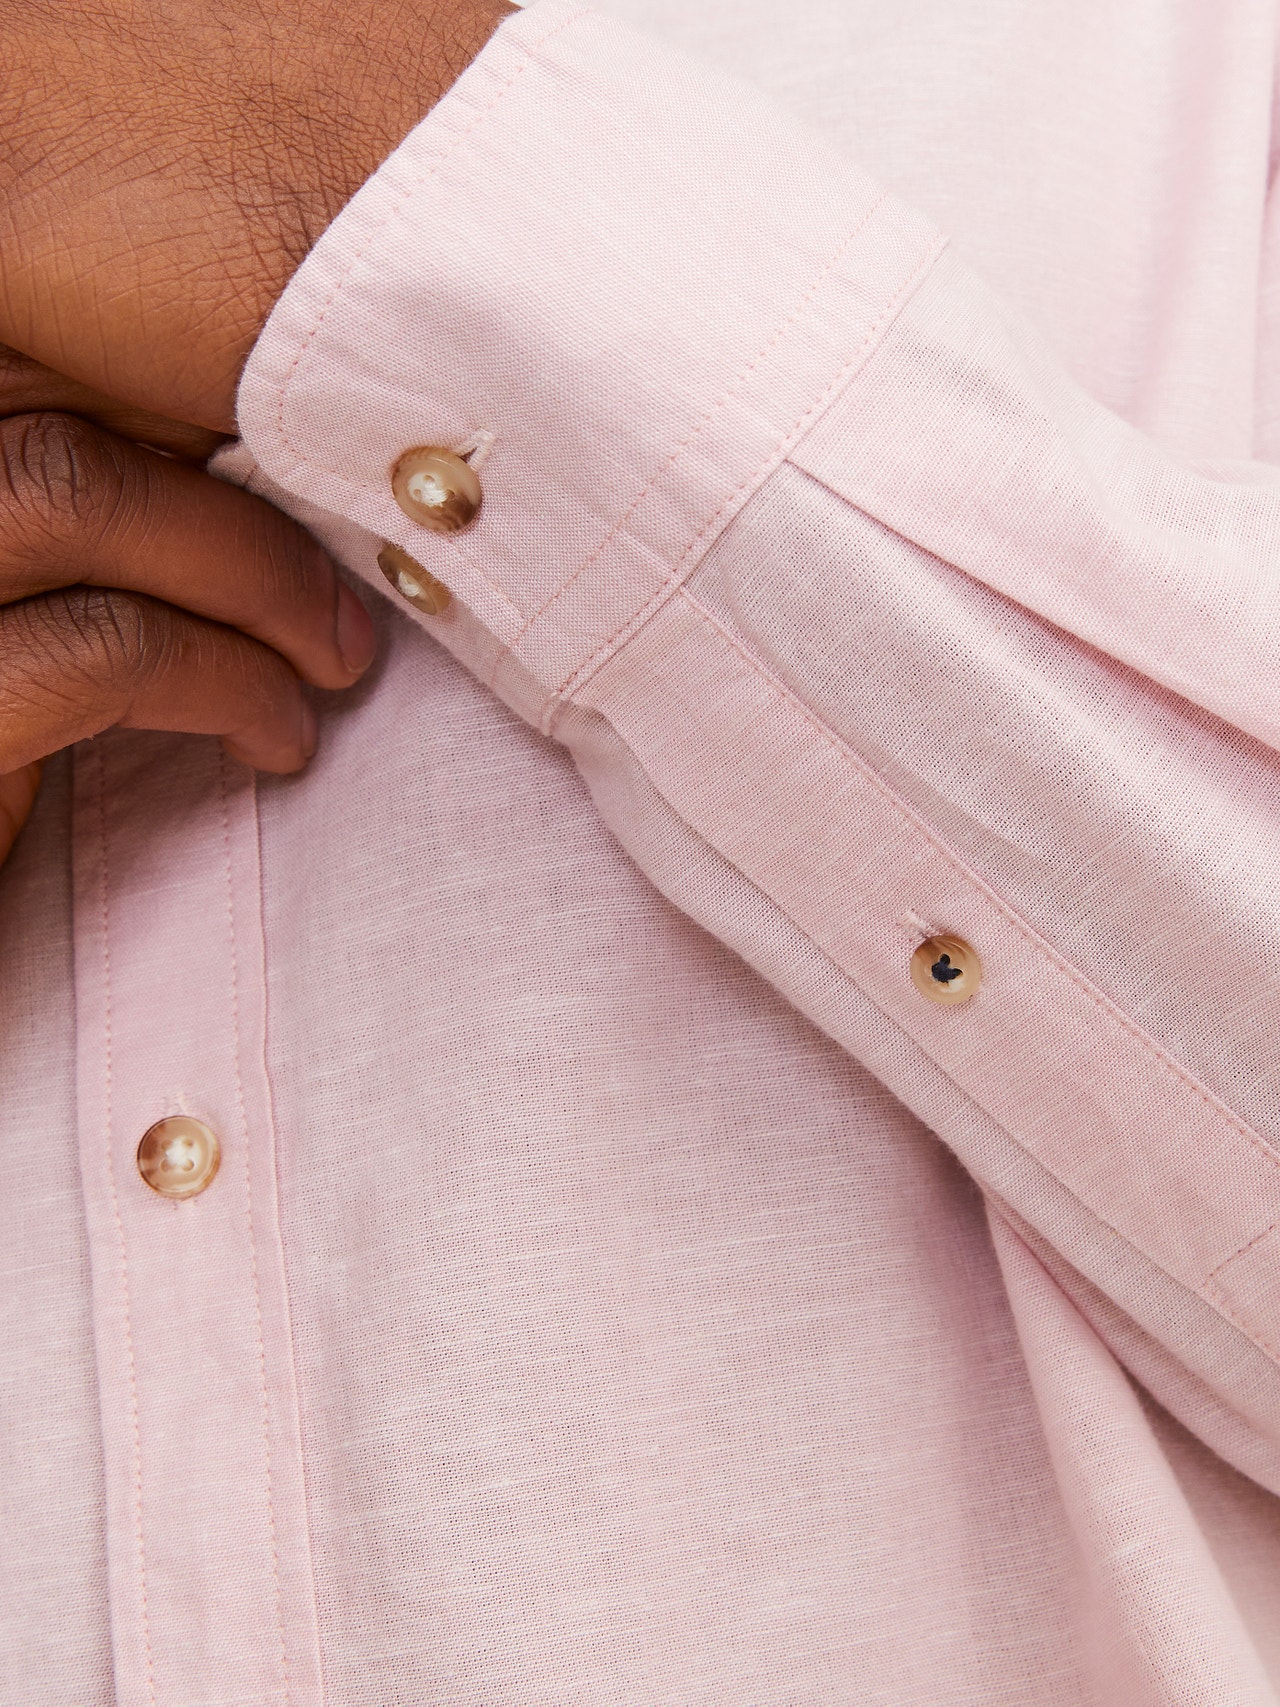 Jack & Jones Comfort Fit Overhemd -Pink Nectar - 12248384